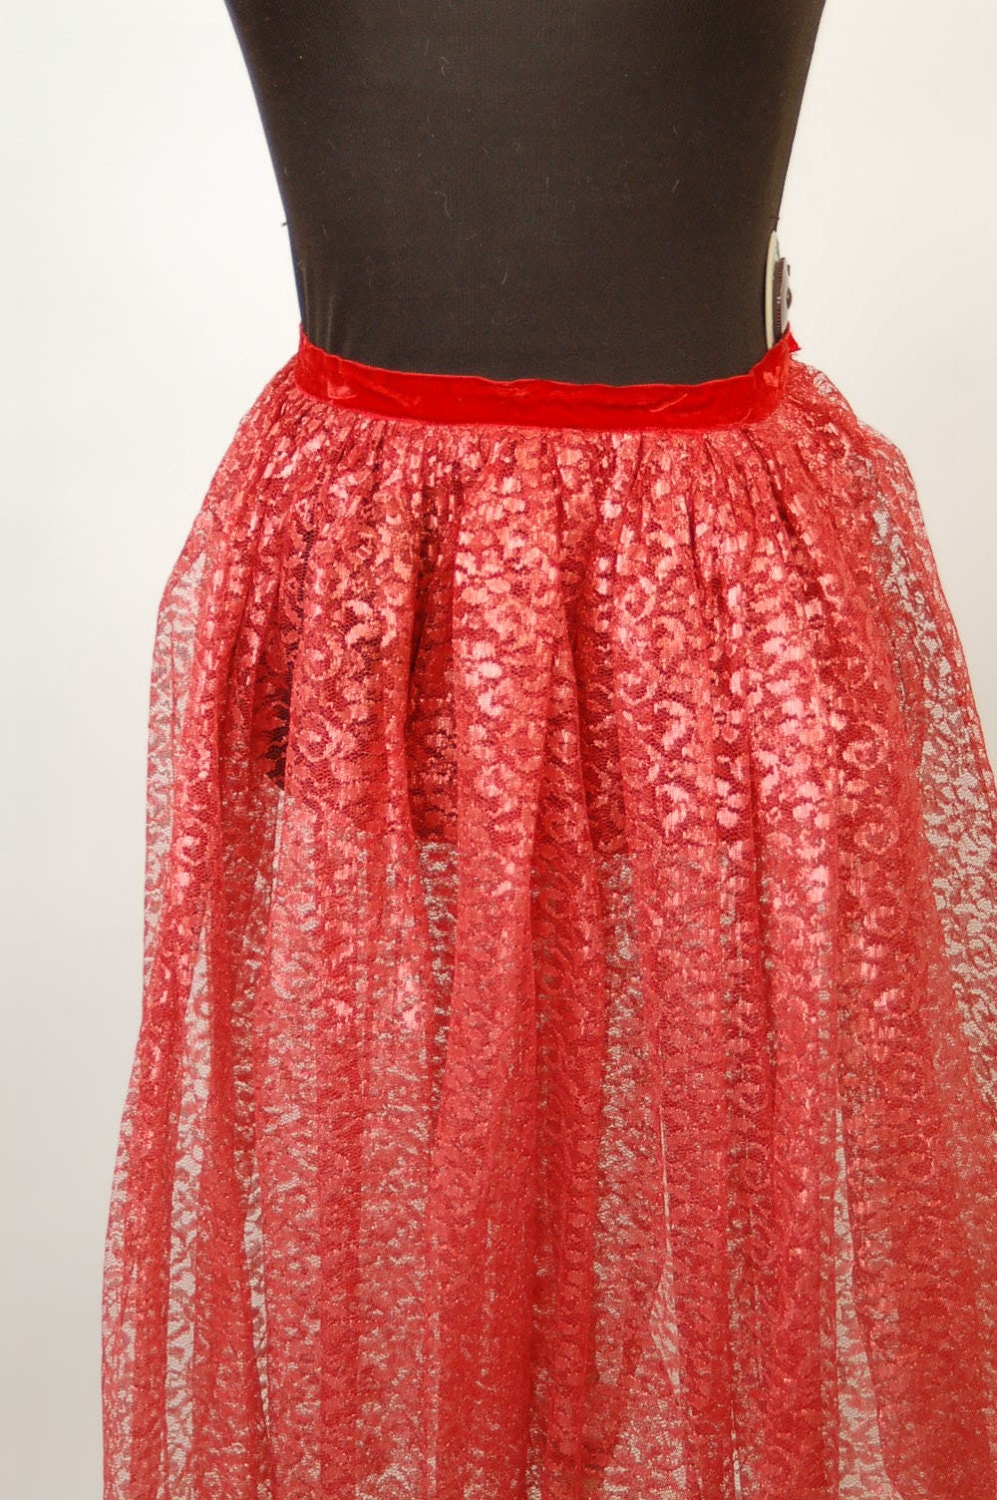 1950s red lace skirt tea length skirt, Size XS/ Child skirt